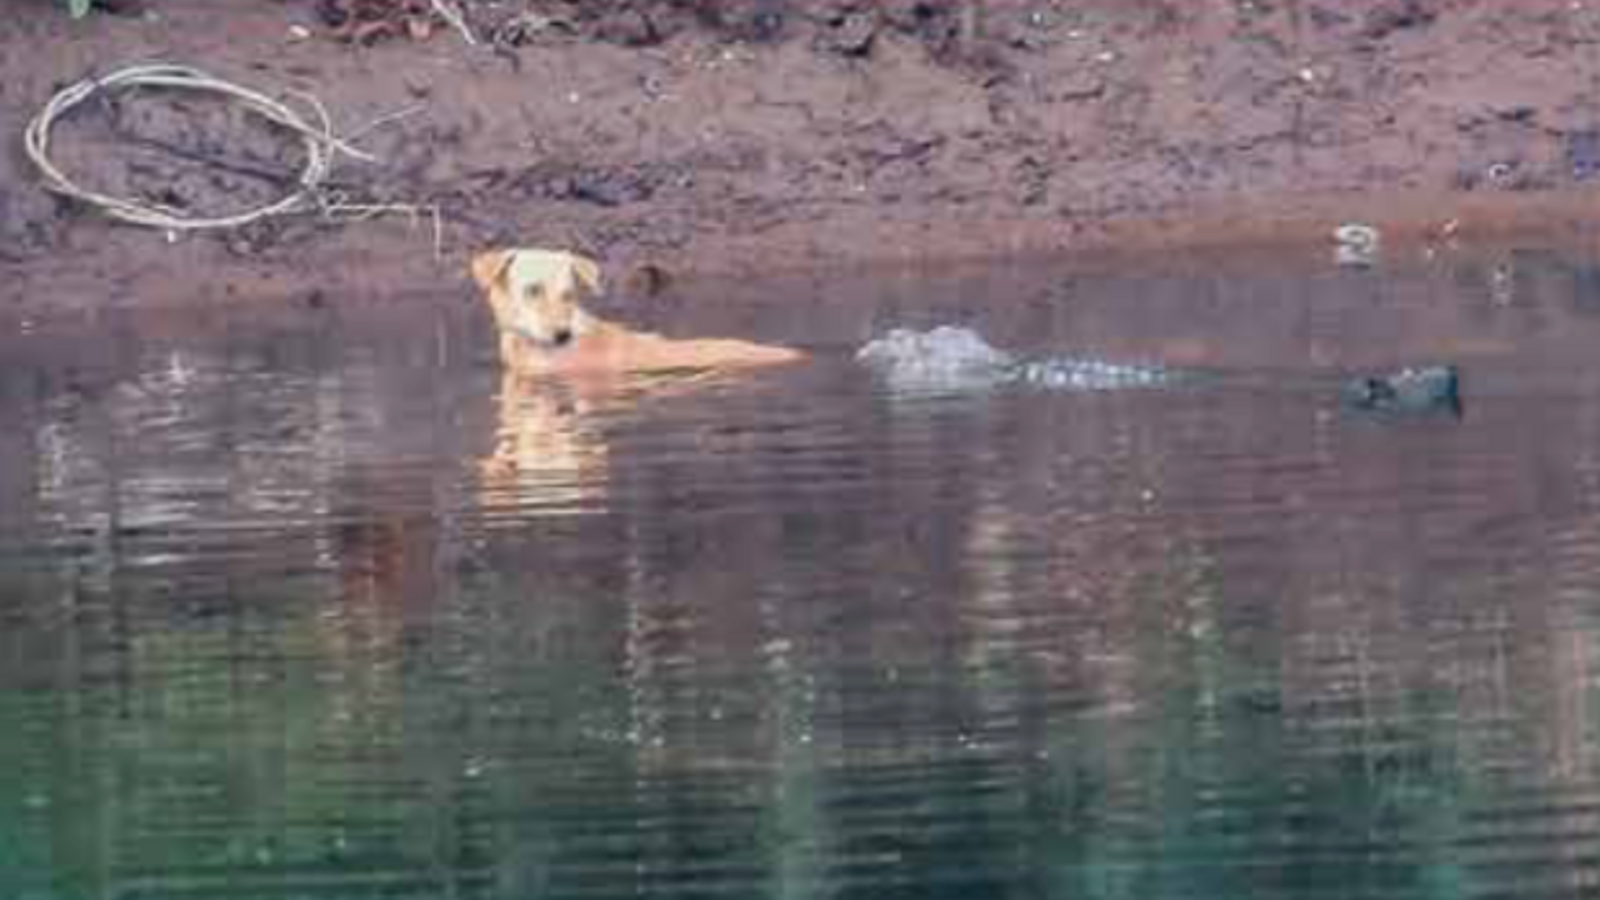 Hidhet në lumë për shkak të qenve të egër, qeni shpëtohet nga krokodilët!